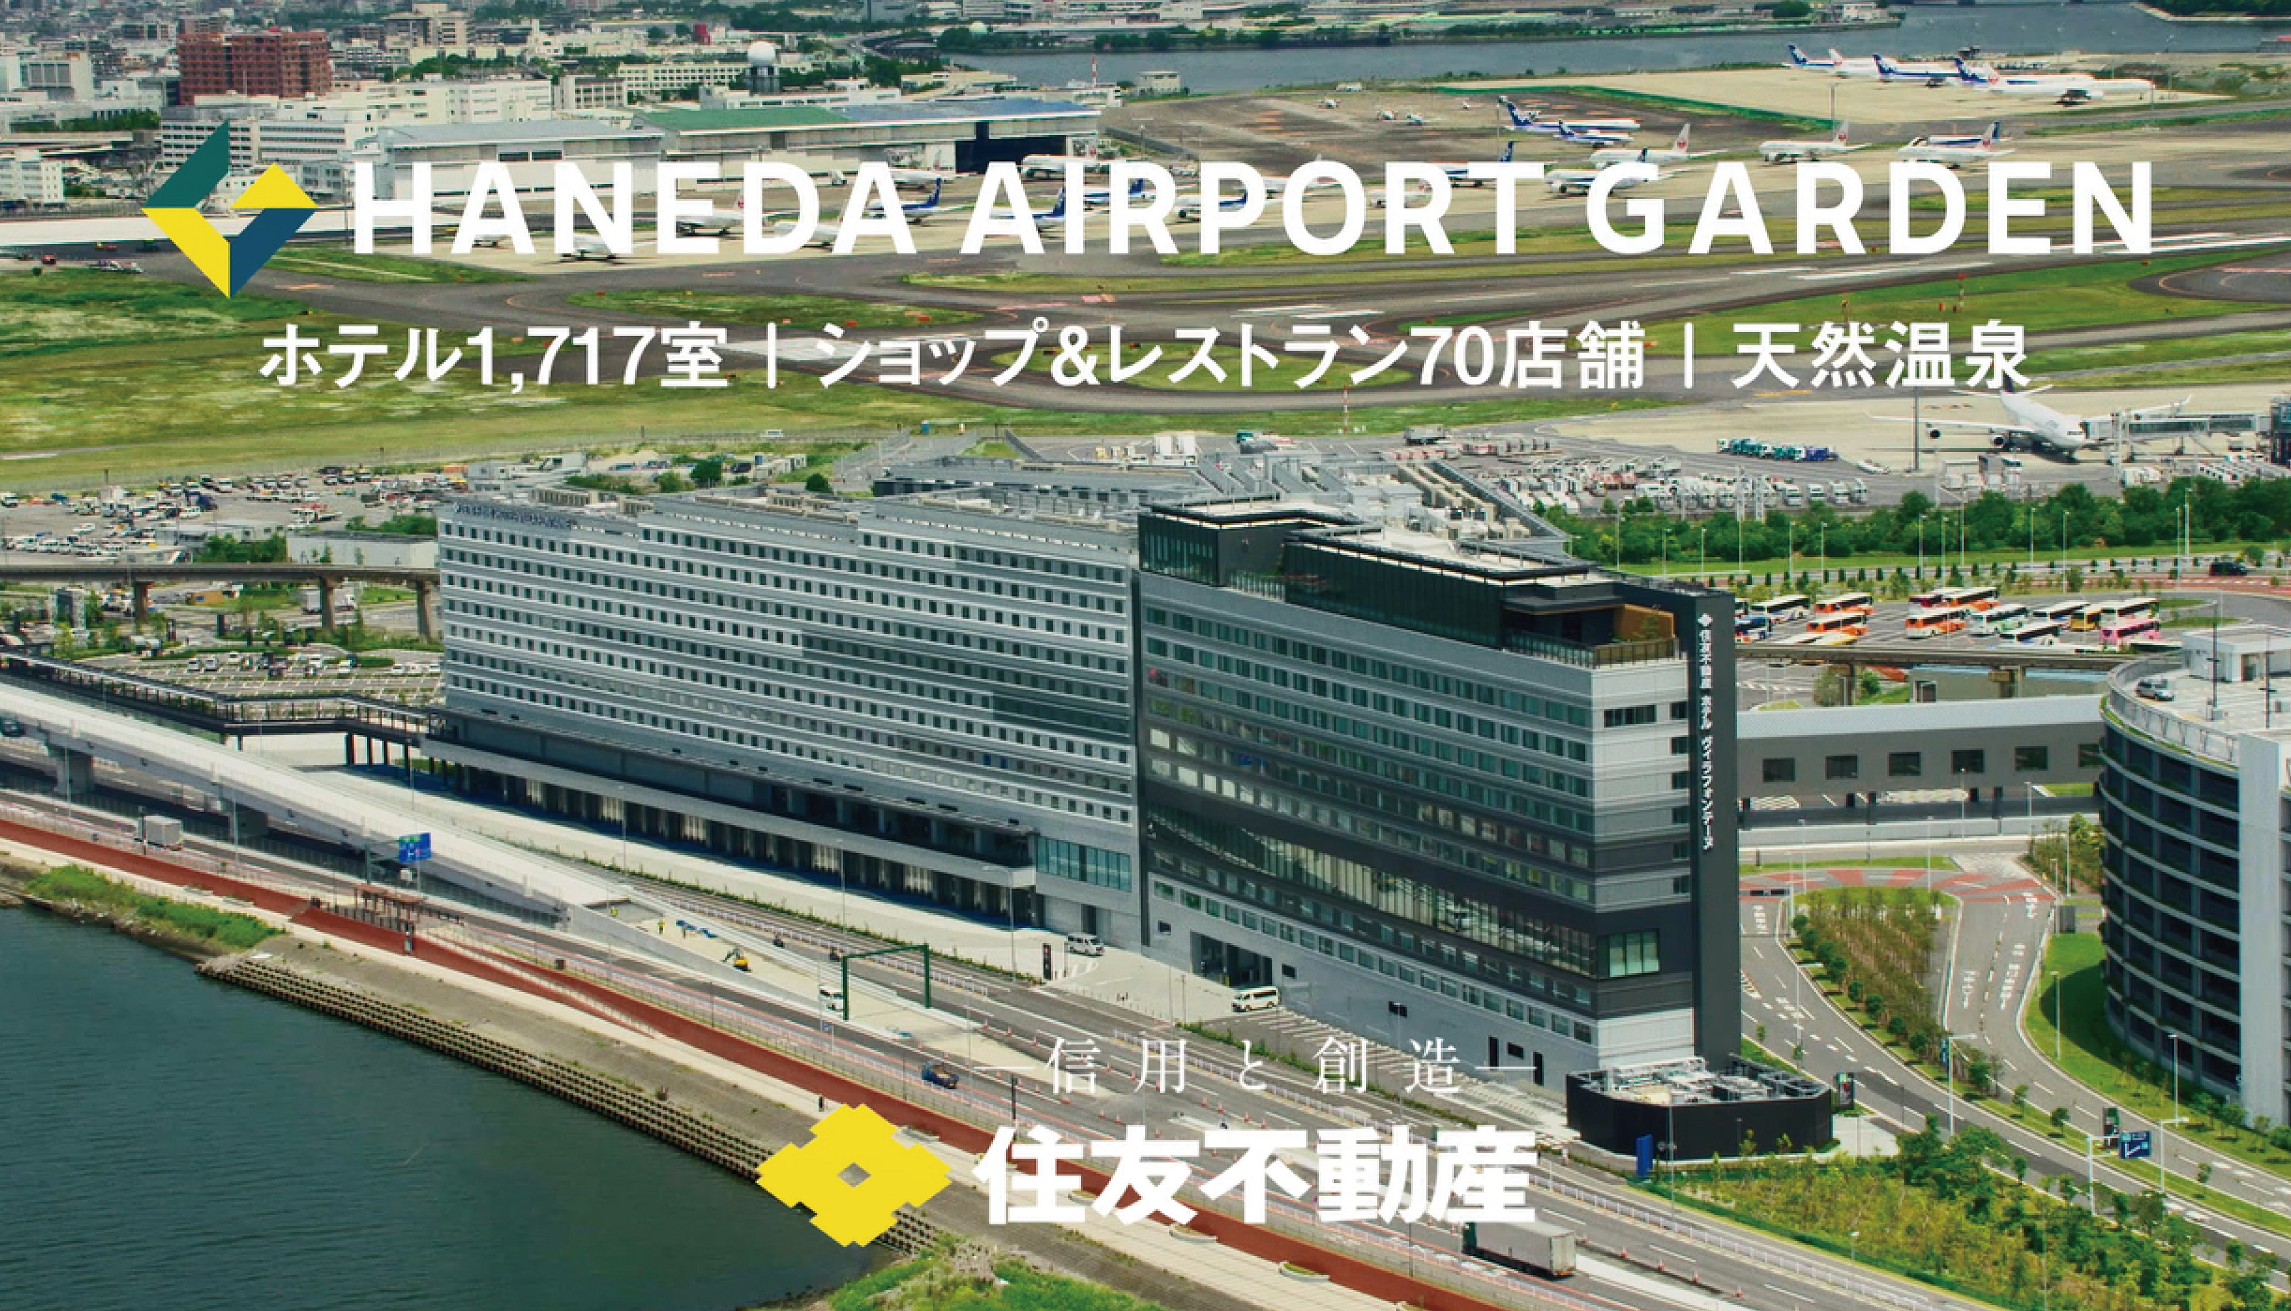 Retail Facility "Haneda Airport Garden" (30 sec.)